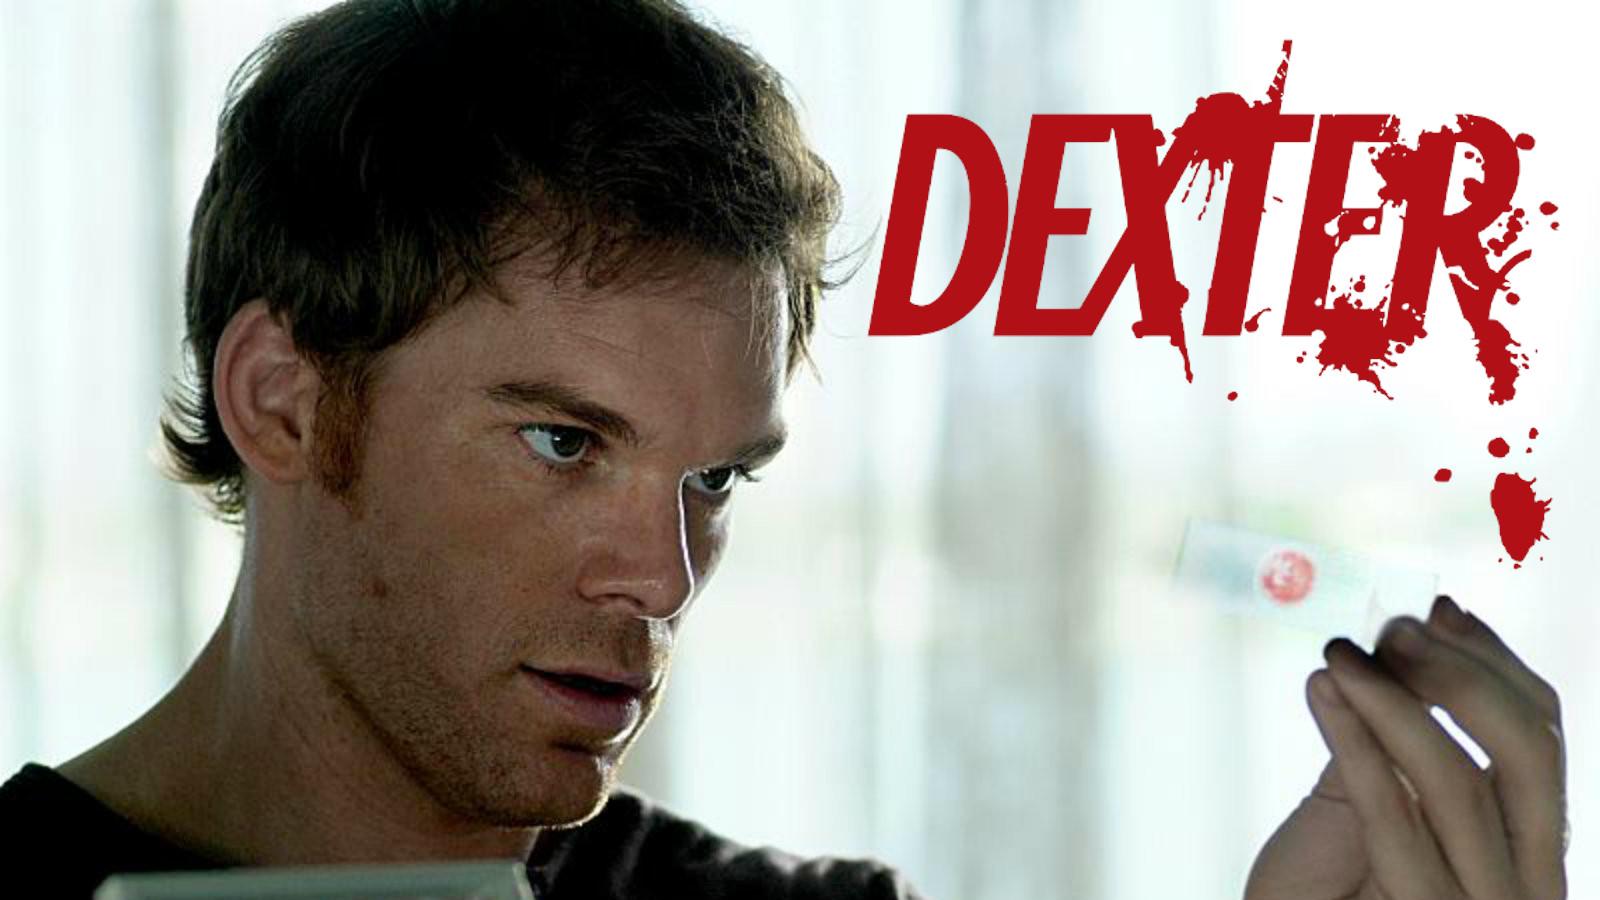 Dexter